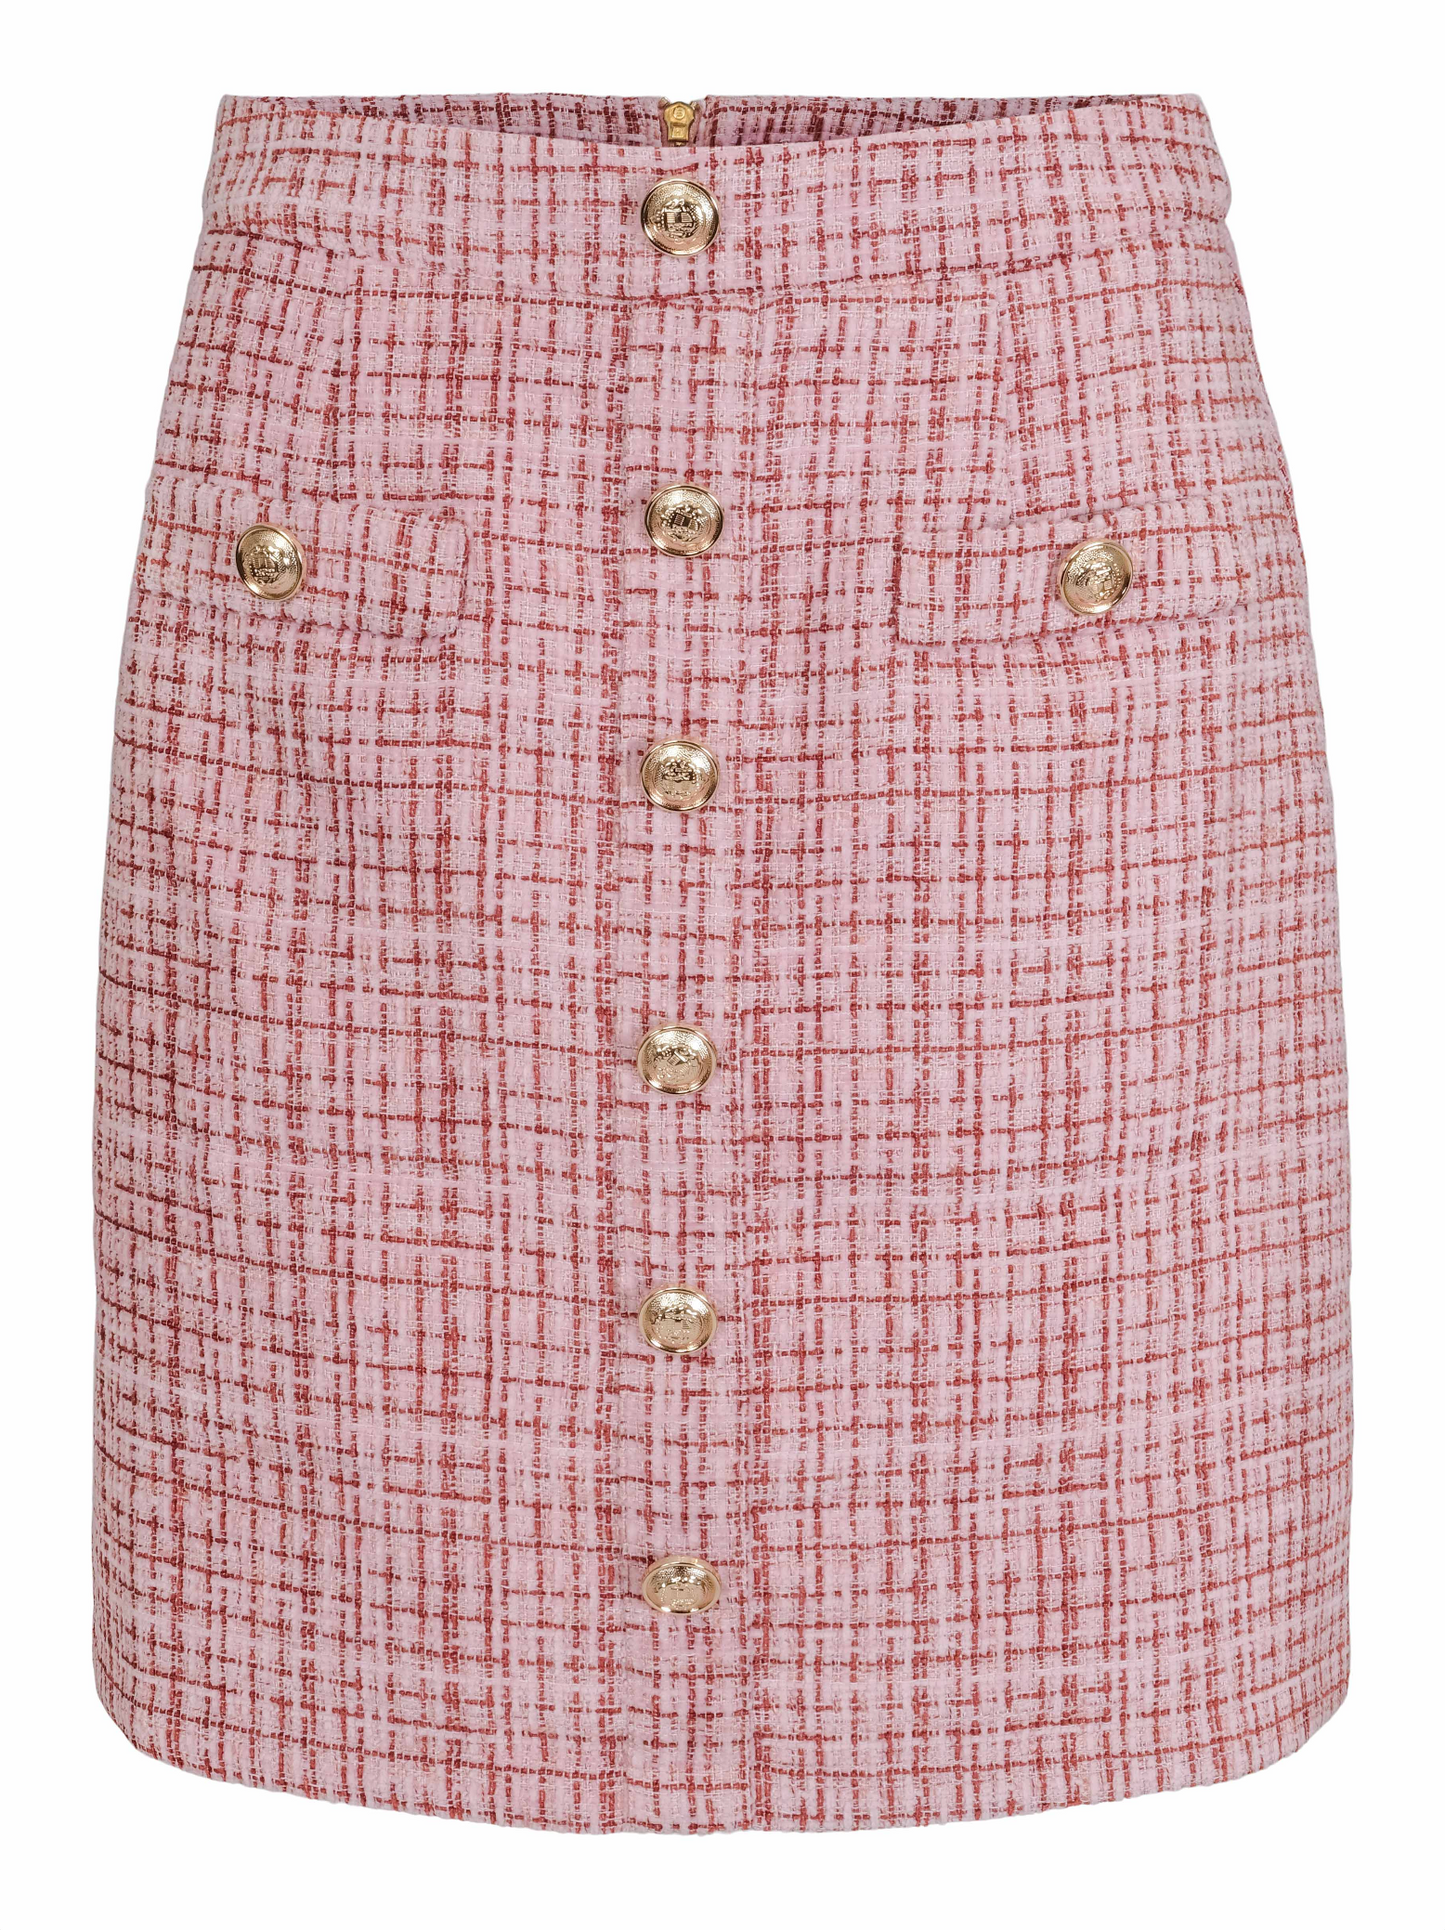 Mille skirt - Pink tweed